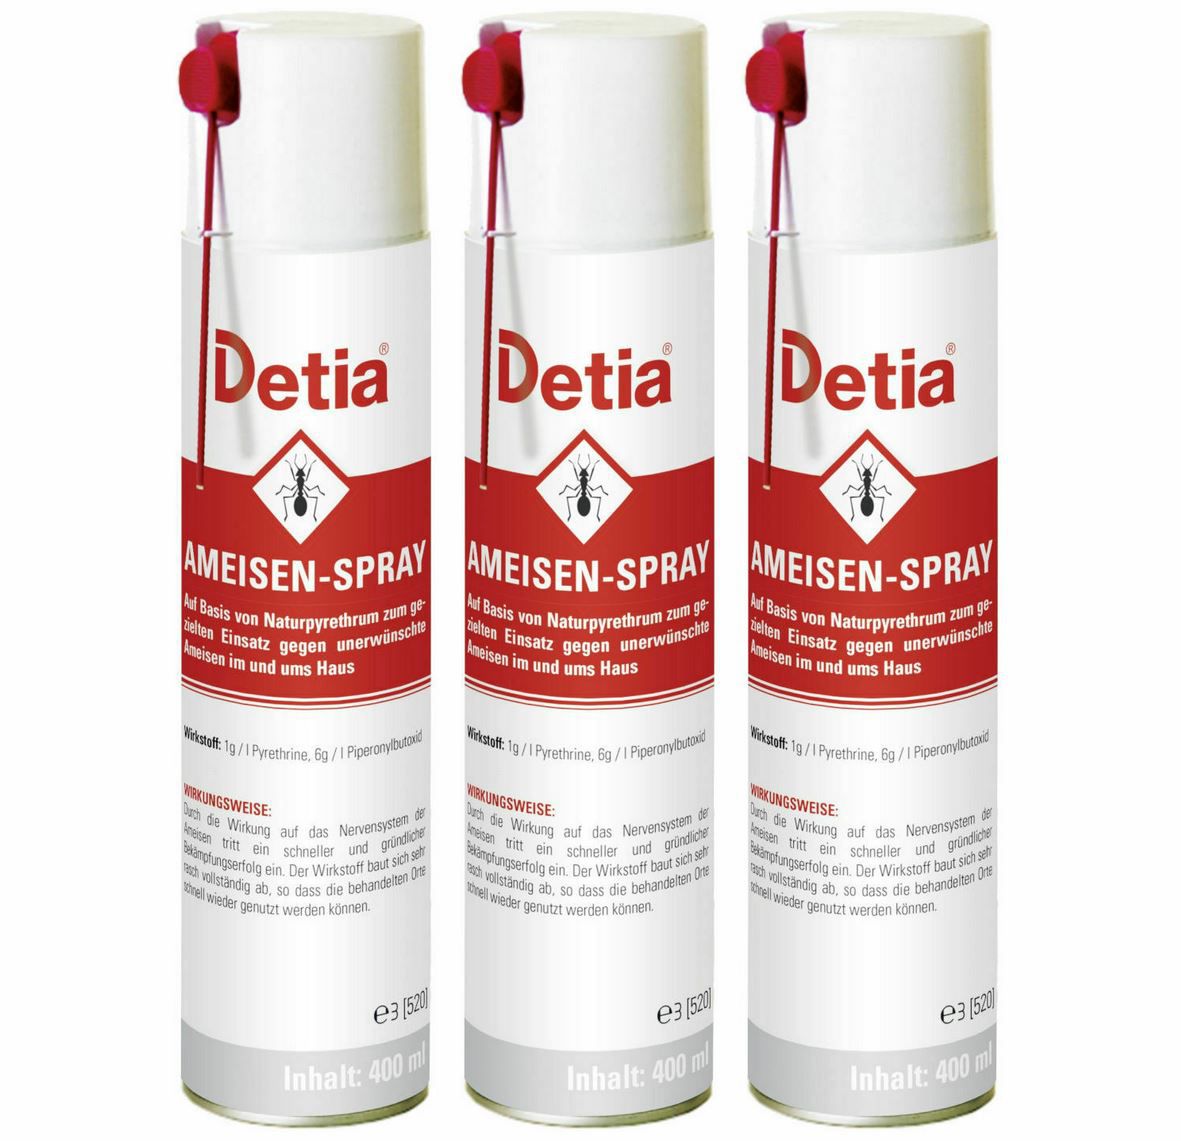 DETIA Ameisen Spray   3x 400 ml für 14,95€ (statt 18€)